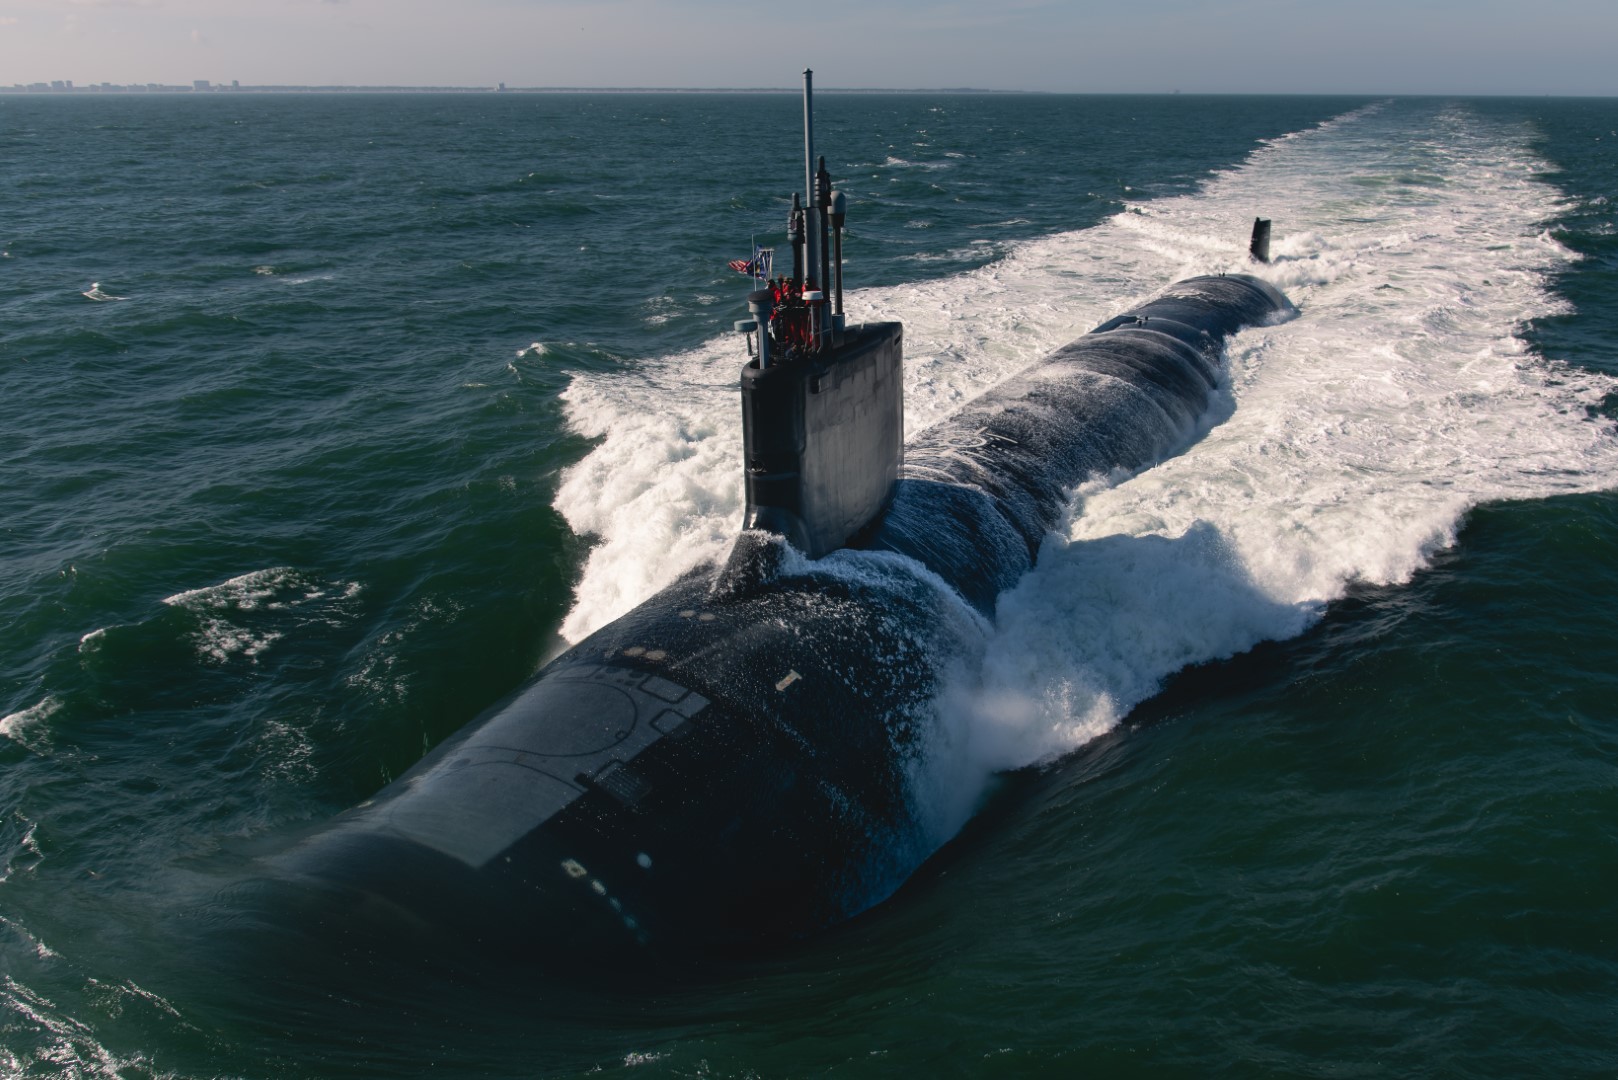 Gli Usa smentiscono: "Non c'era nessun sottomarino nucleare nelle acque russe"